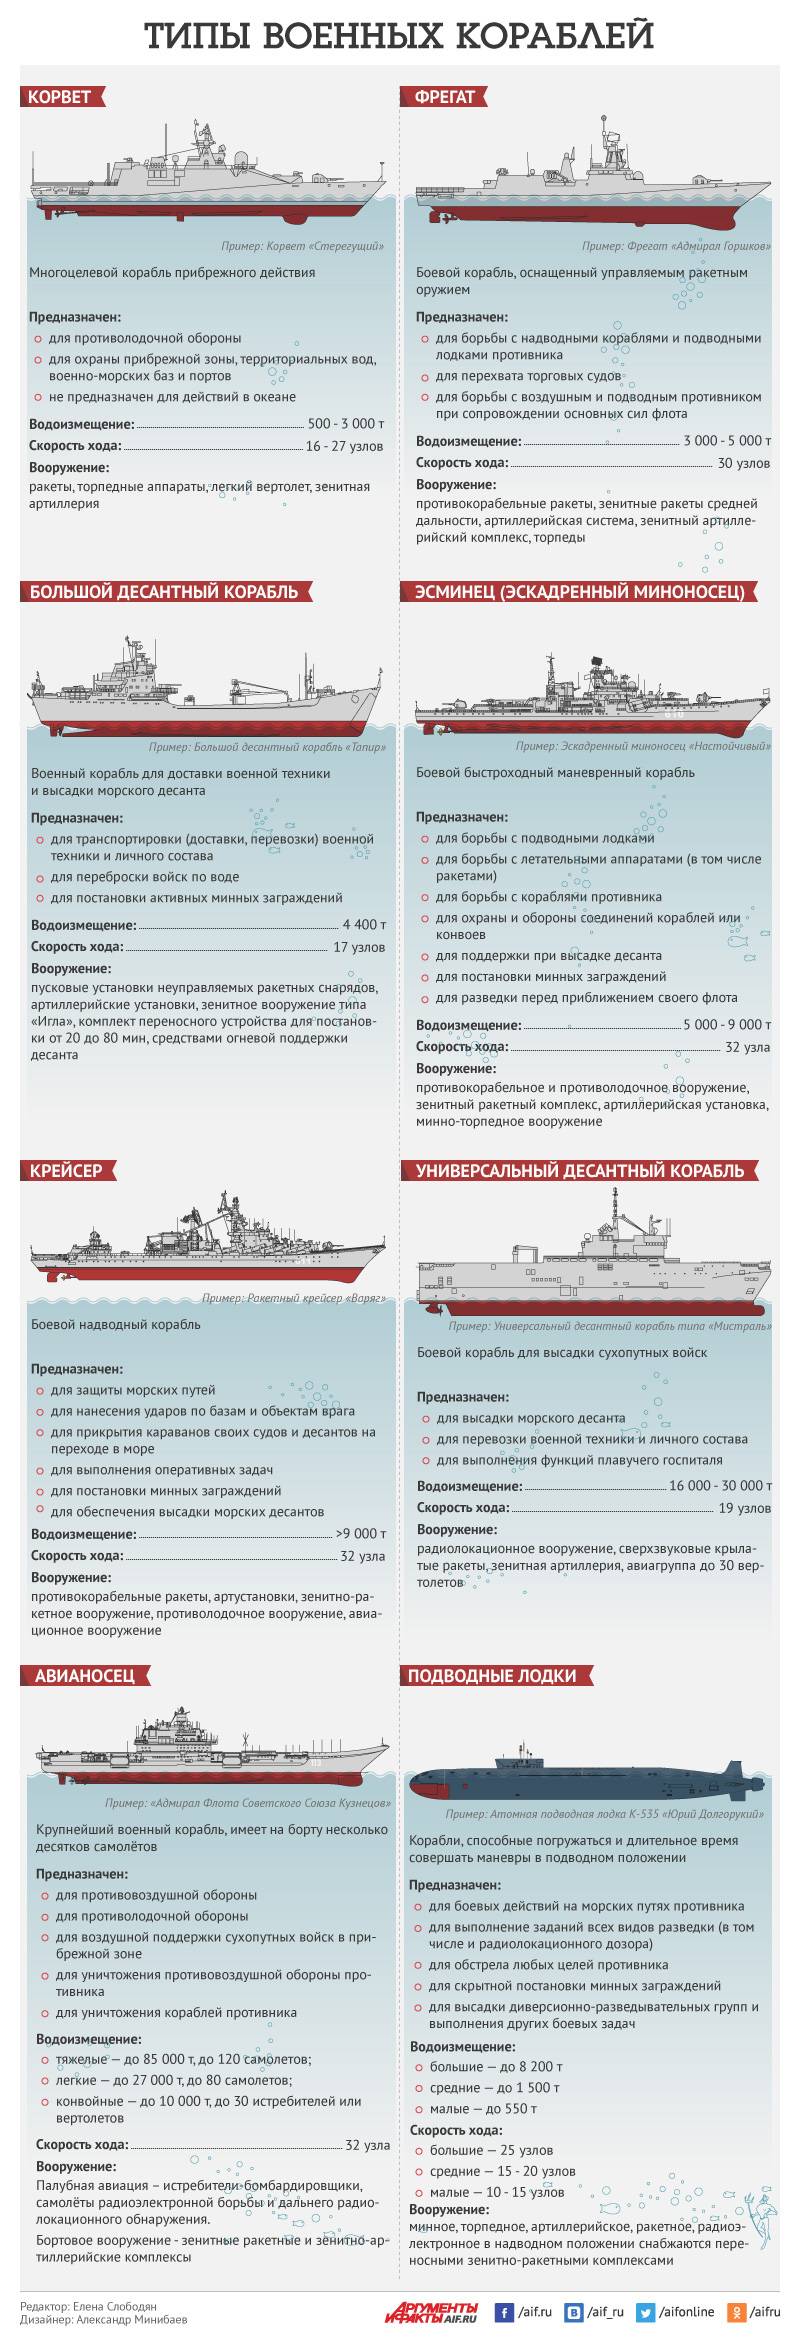 Какие корабли состоят на вооружении ВМФ России? Инфографика